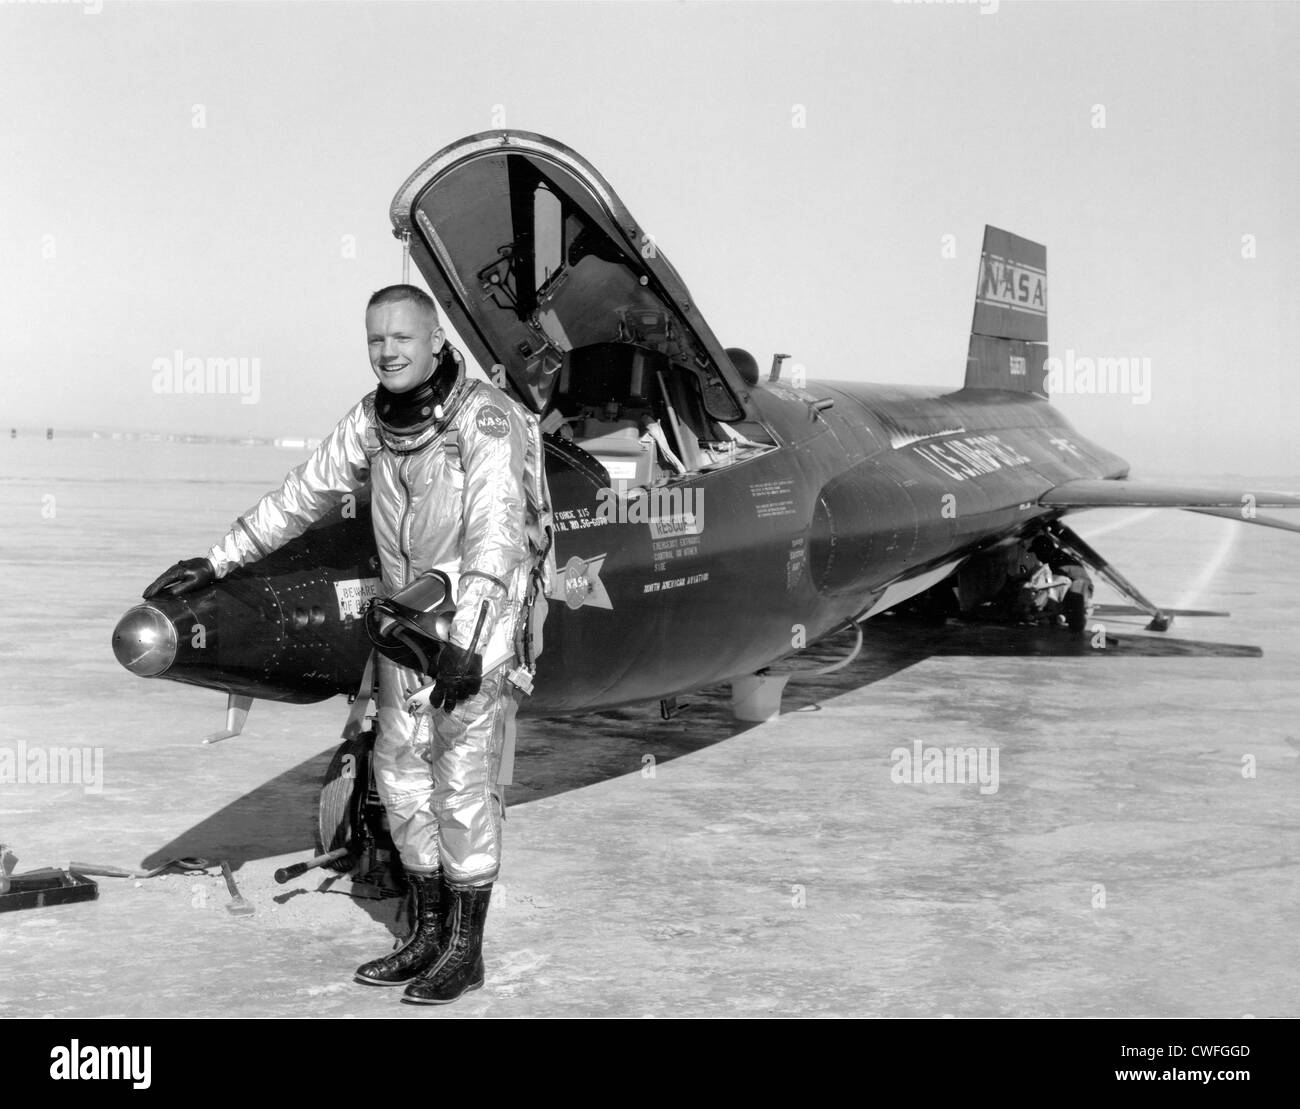 NASA-Testpilot Neil Armstrong neben dem x-15 Schiff #1 nach einem Forschung Flug 1. Januar 1960 am Dryden Flight Research Center, Edwards, CA. Die x-15 war ein raketengetriebenes Flugzeug 50 Fuß lange mit einer Flügelspannweite von 22 Fuß. Es war ein Raketen-förmigen Fahrzeug mit einer ungewöhnlichen keilförmigen Seitenleitwerk, dünne stubby Flügeln und einzigartige Seite Verkleidungen, die entlang der Seite des Rumpfes erweitert. Stockfoto